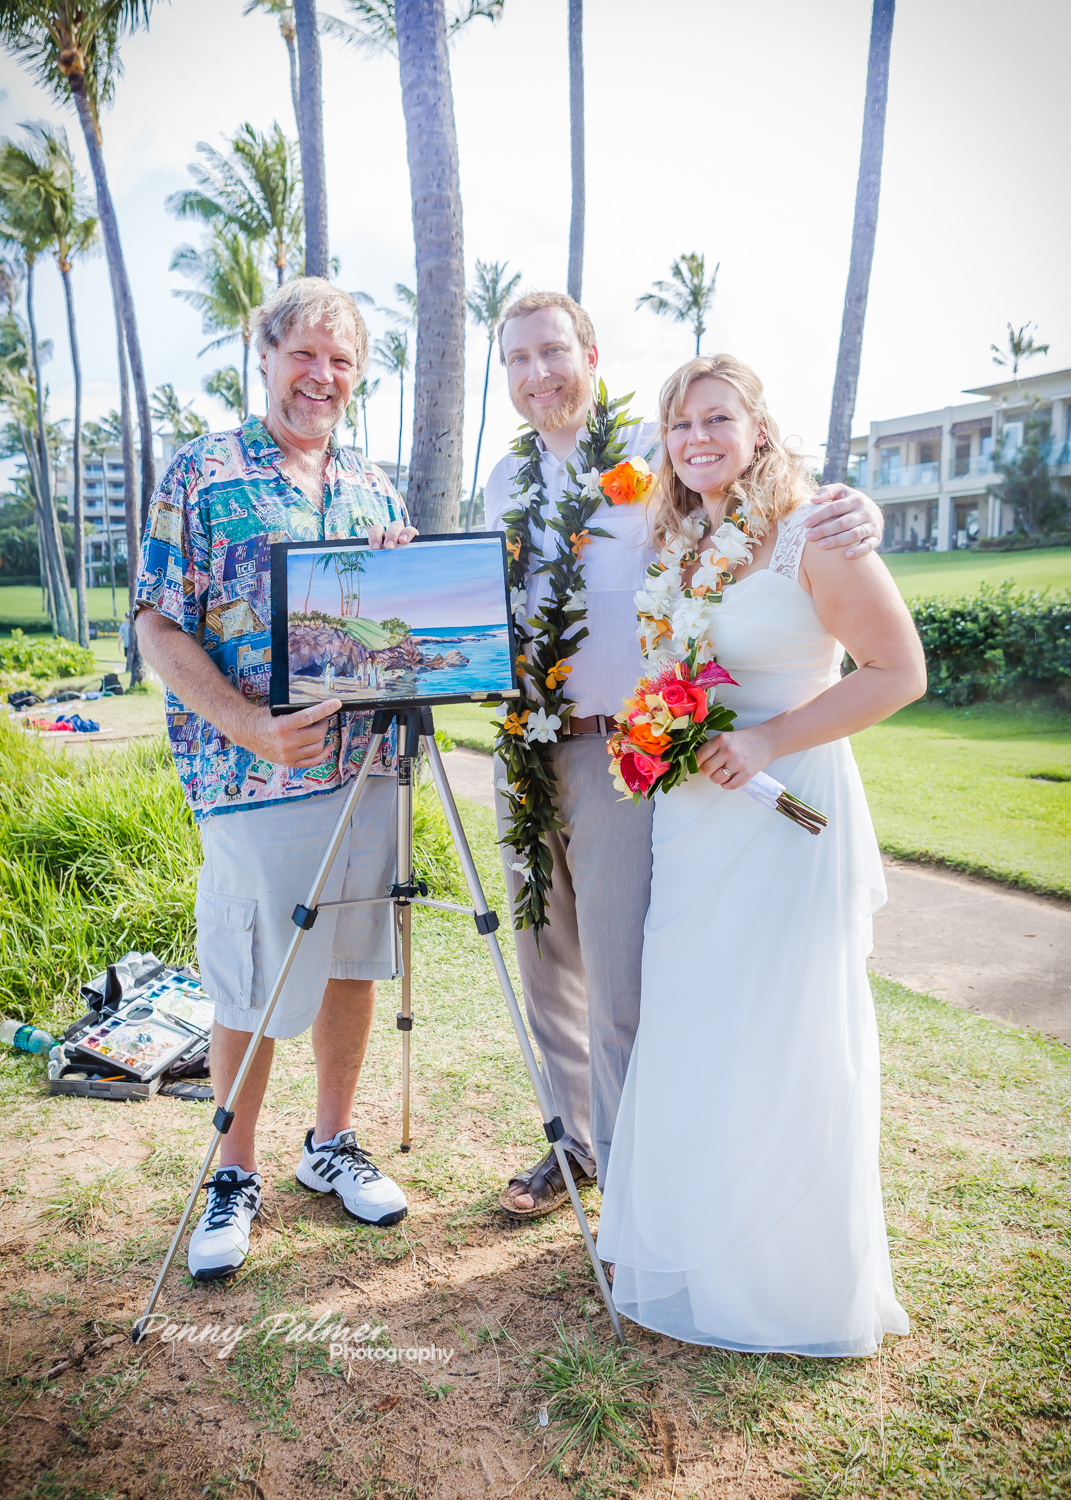 Maui Weddings Aloha Maui Dream Weddings